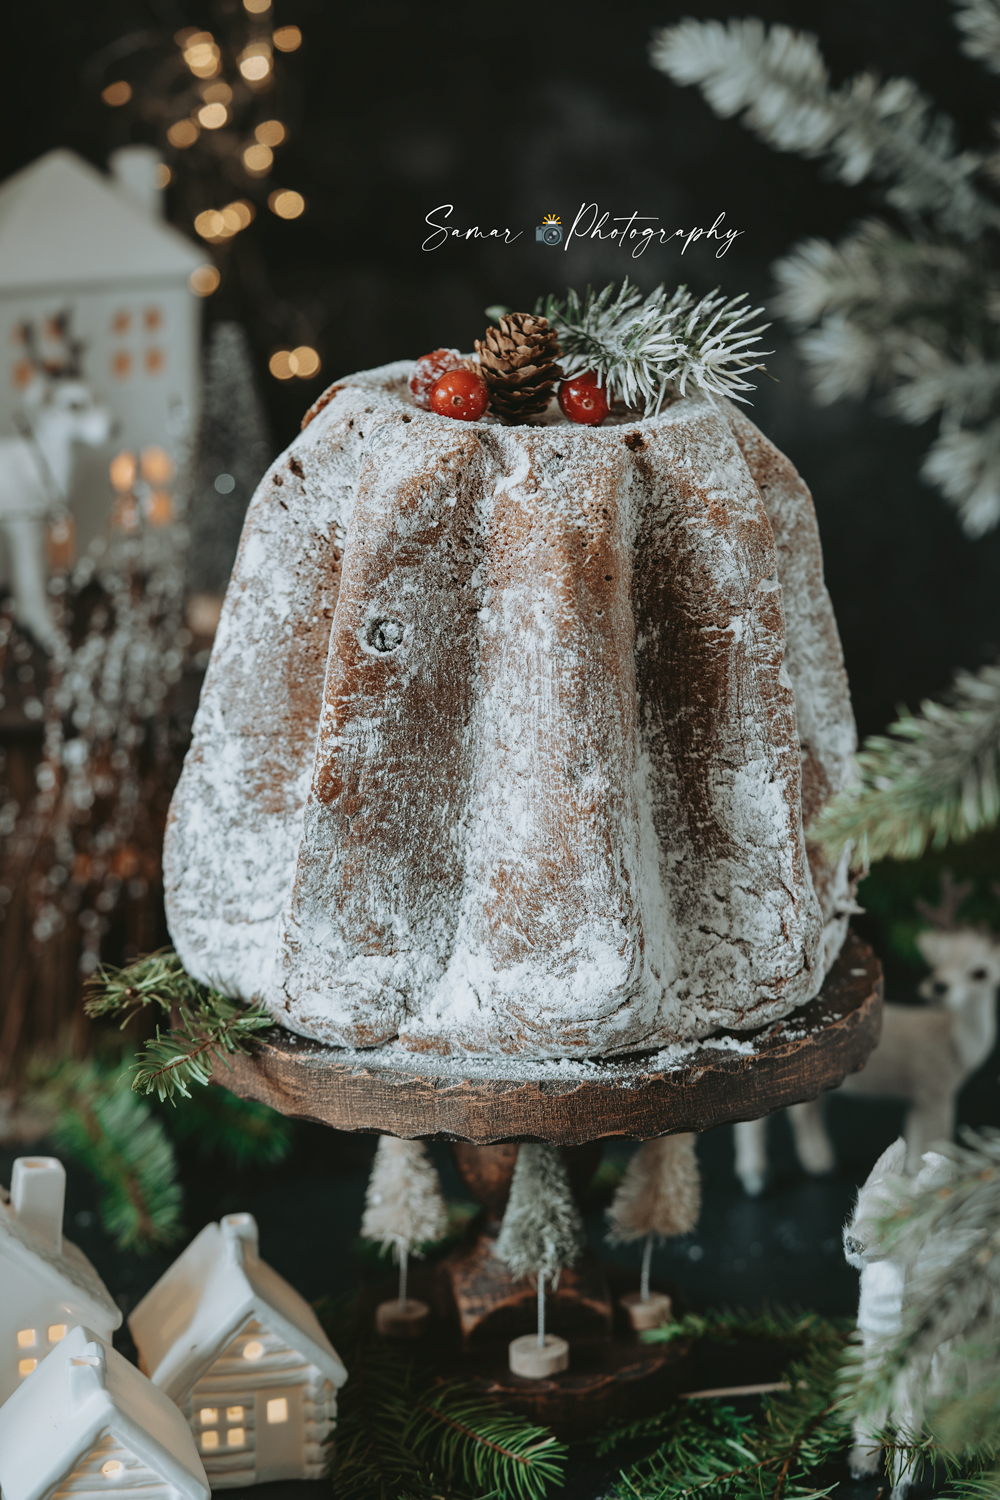 Recette Pandoro, le gâteau de Noël italien